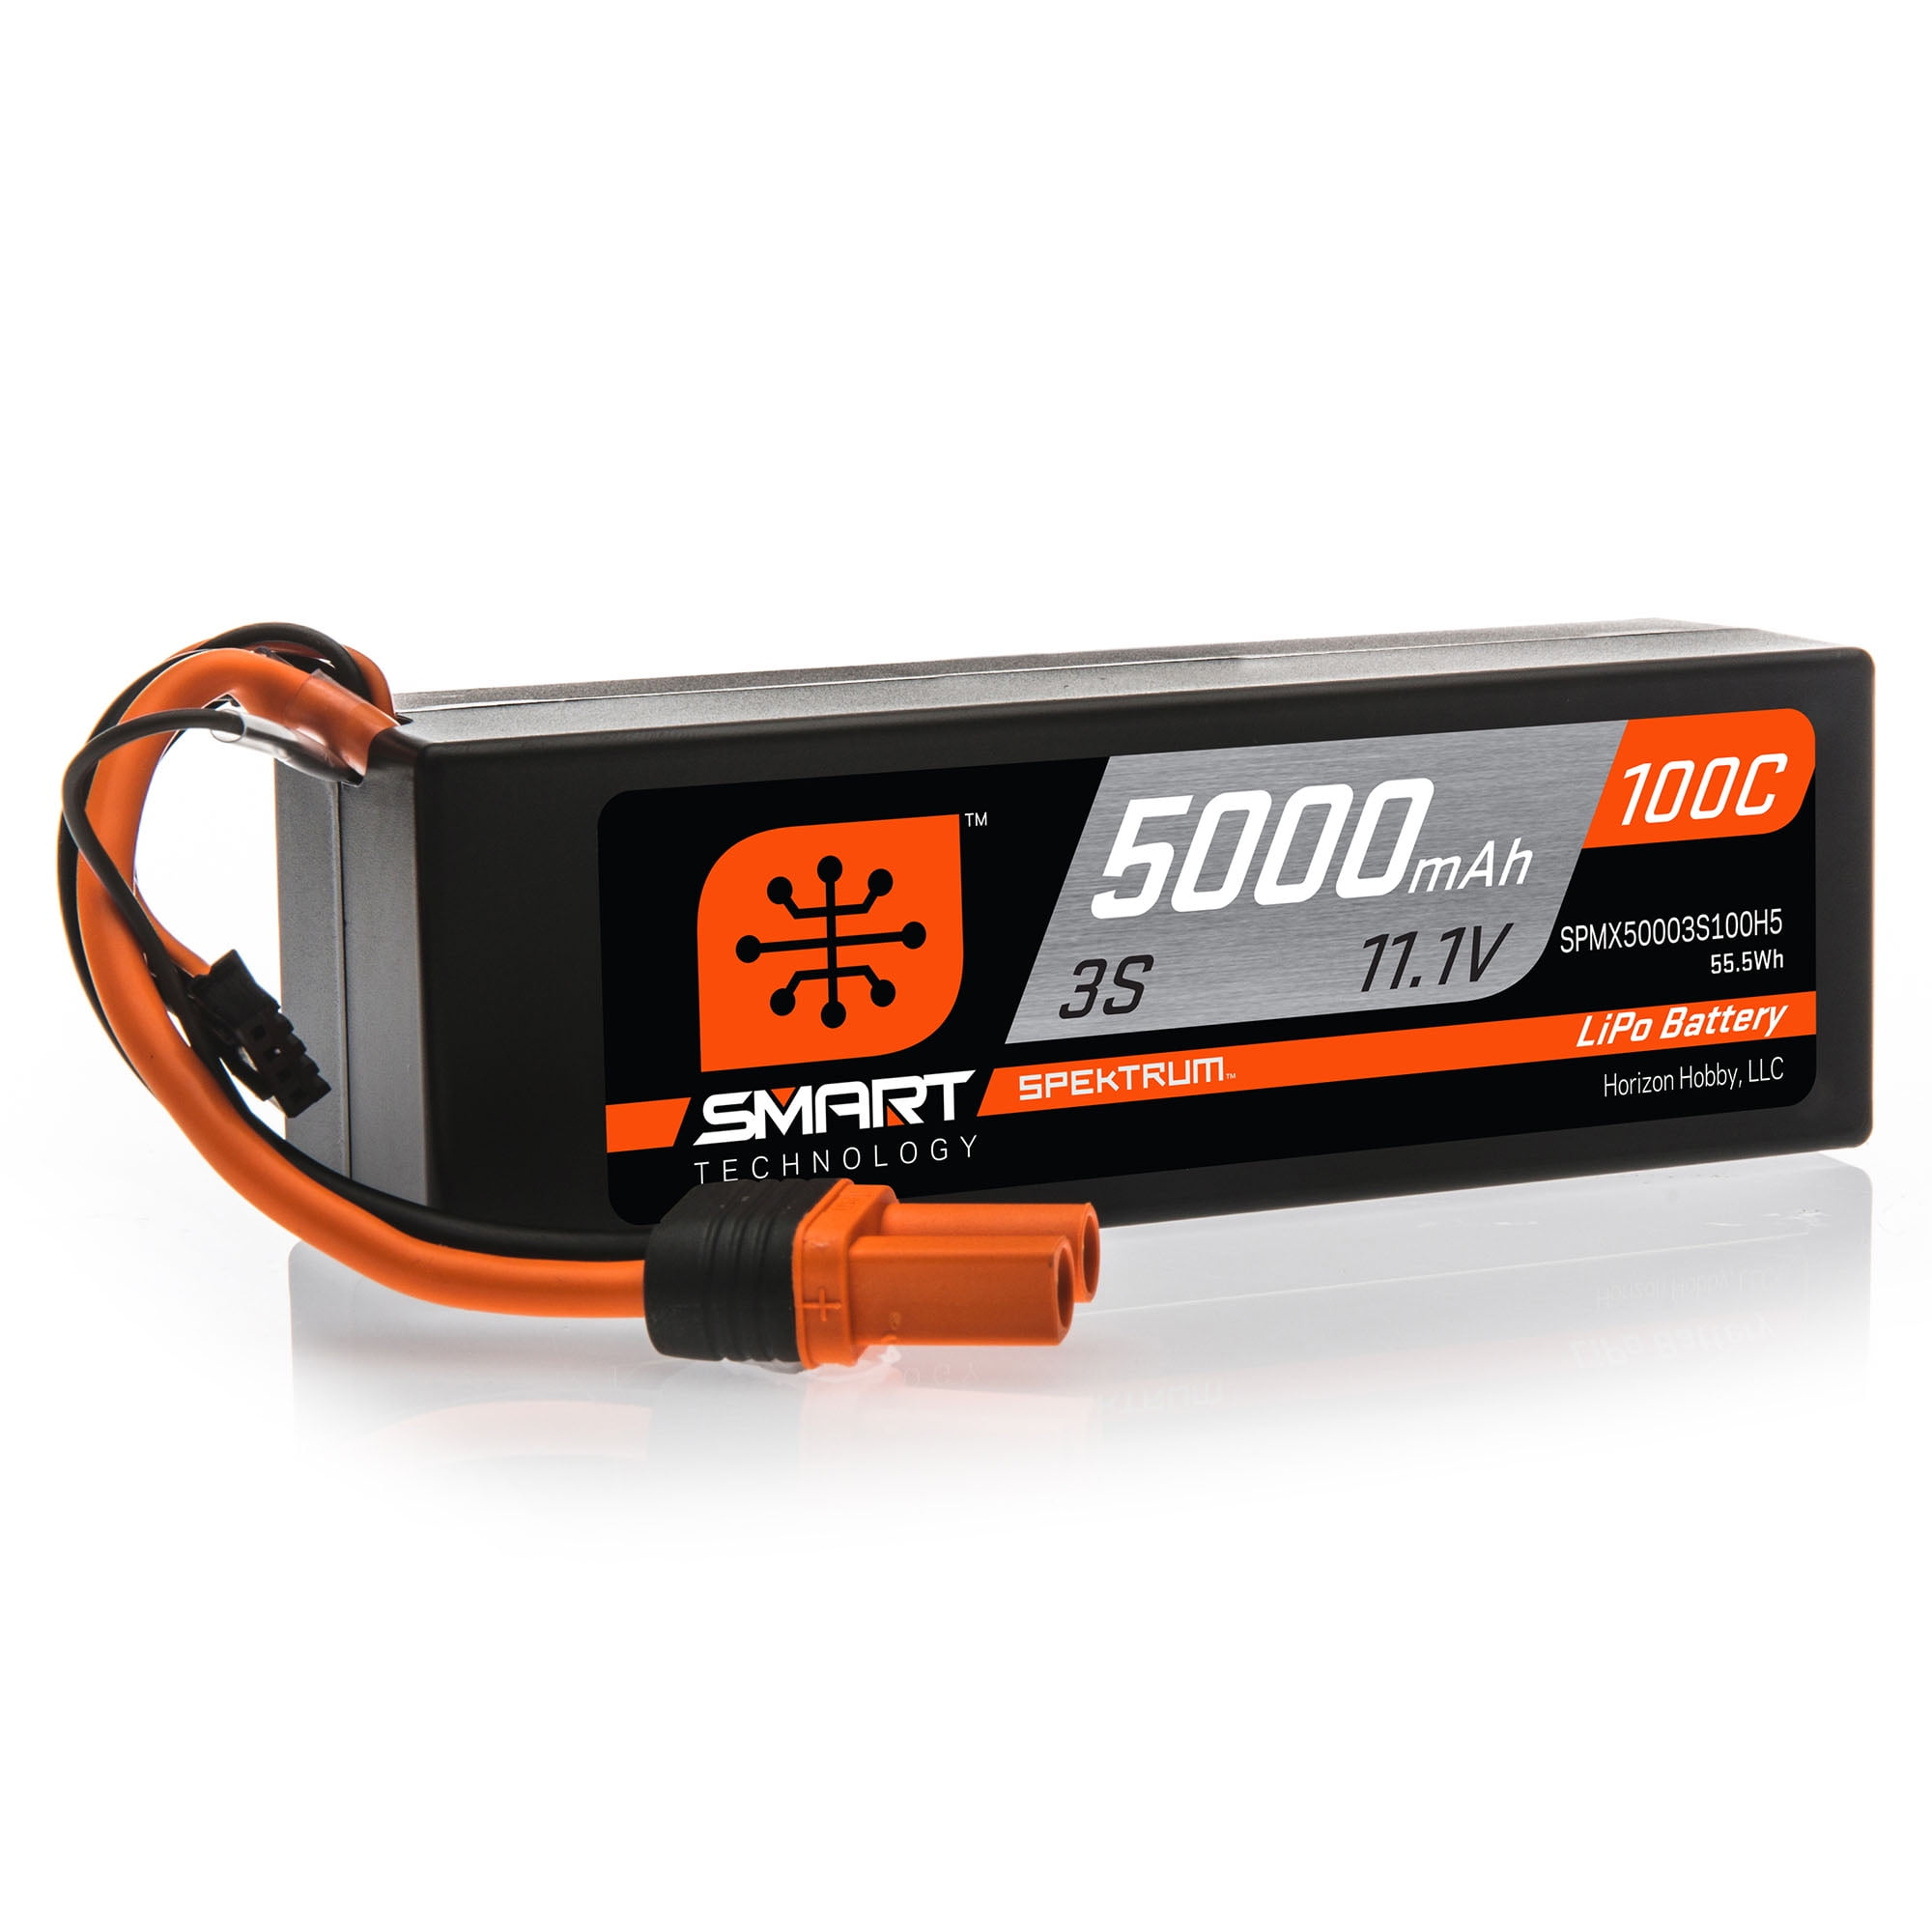 Spektrum 22.2v 3200mah 6s 100c Smart Lipo Battery Ic3 for sale online